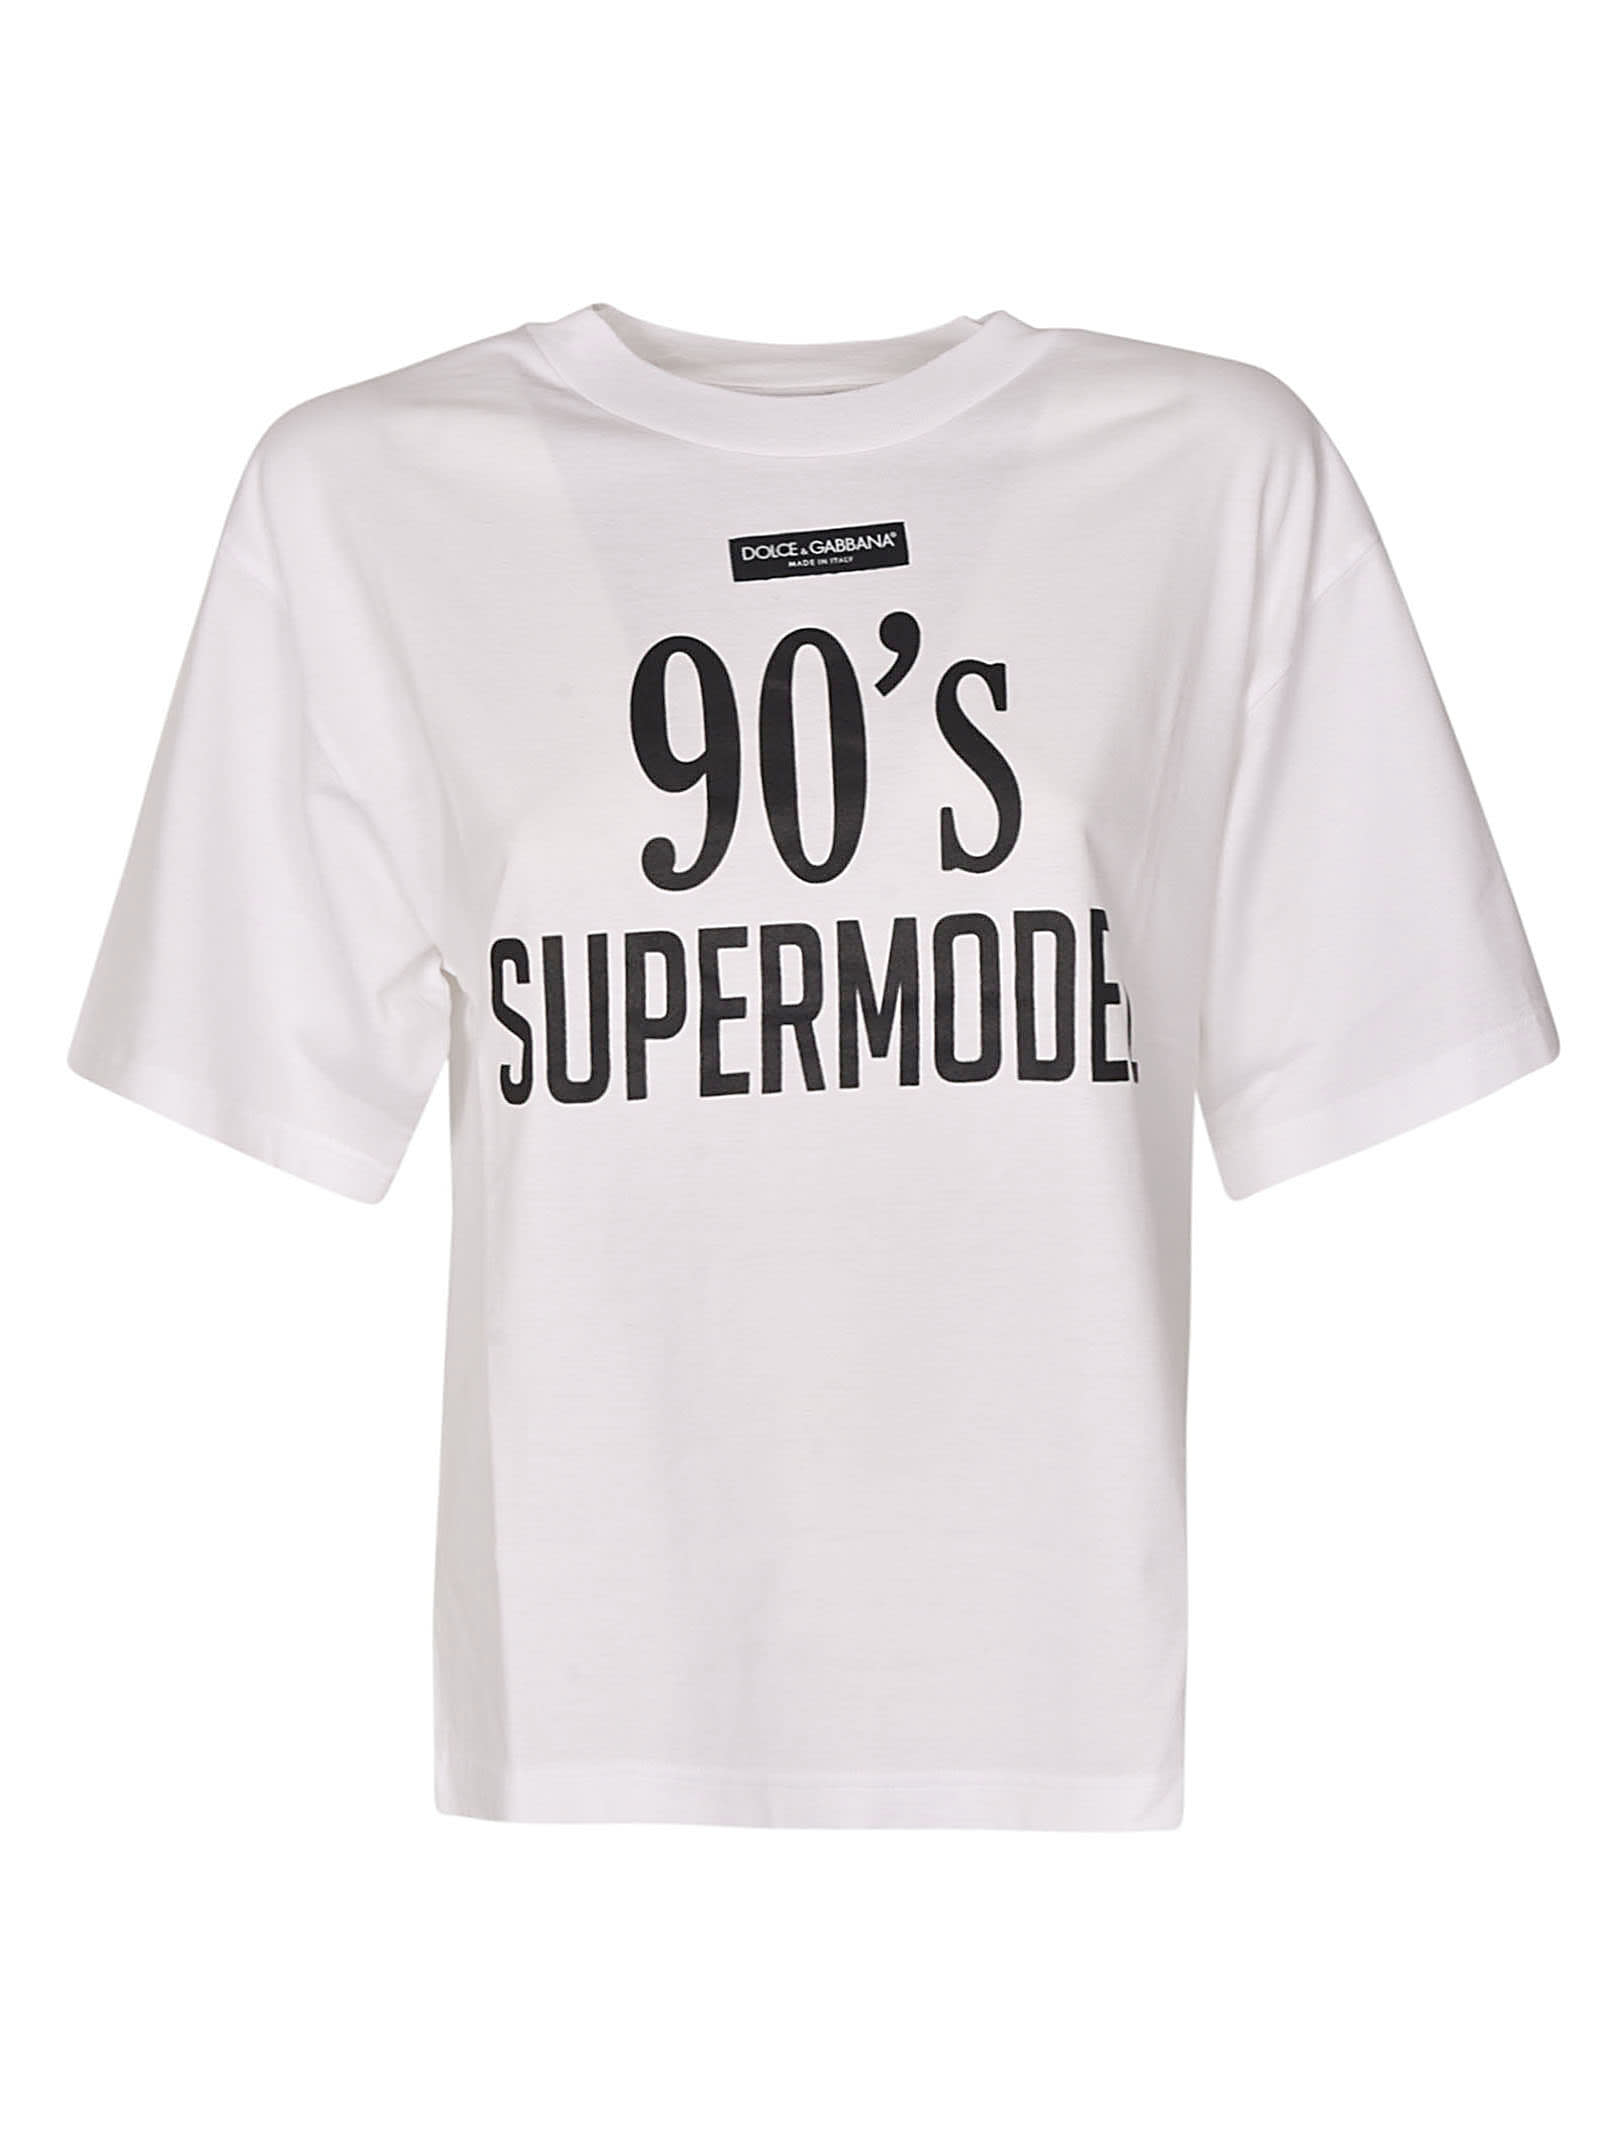 Dolce & Gabbana 90s Supermodel T-shirt